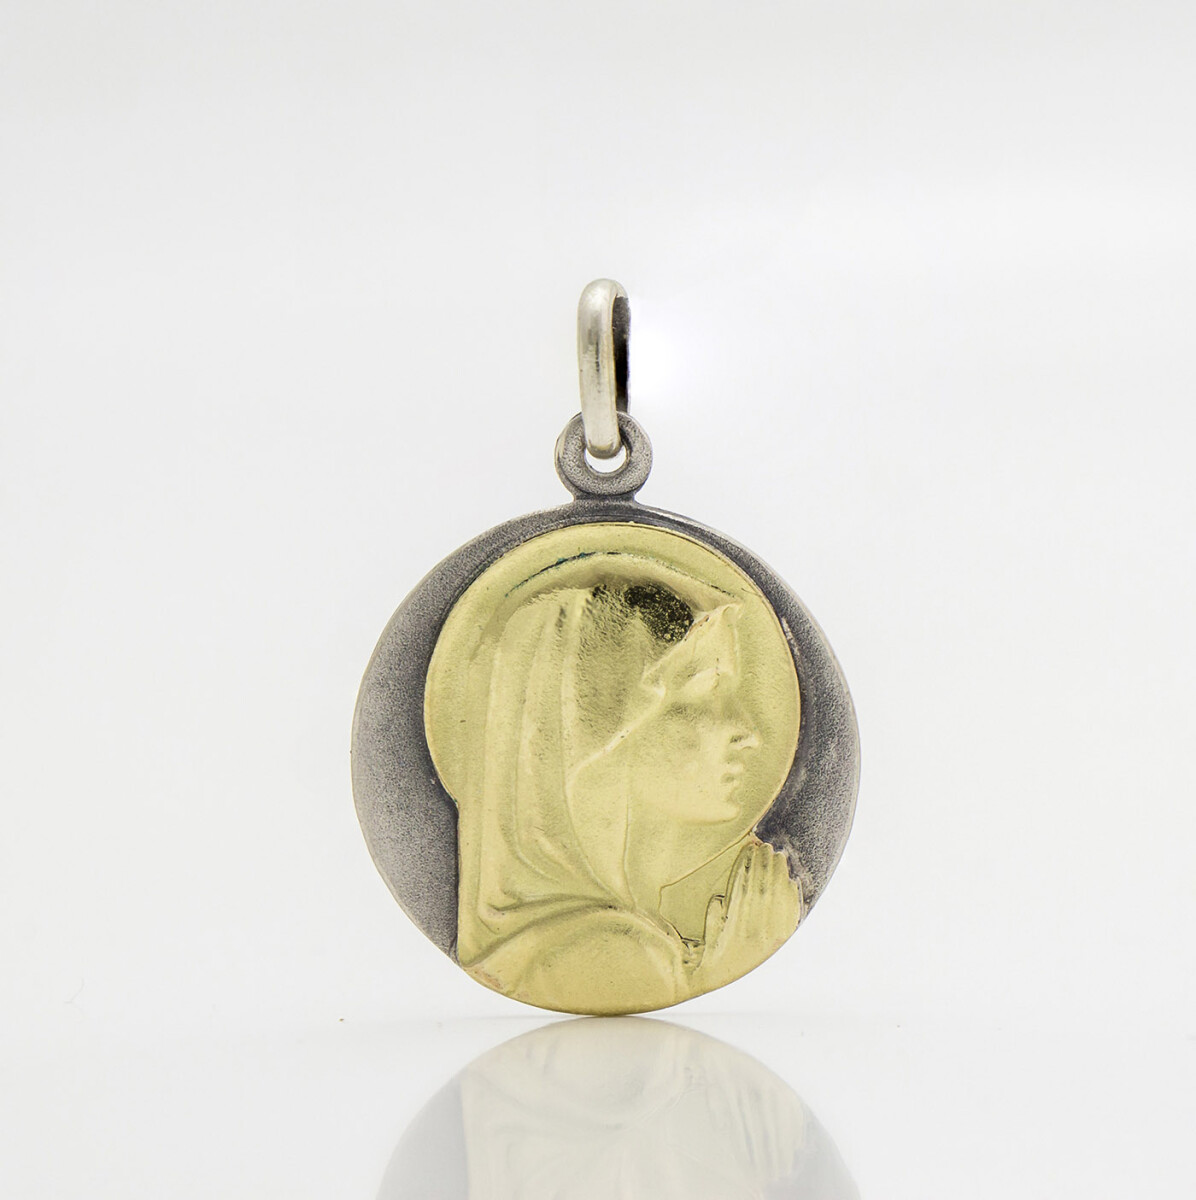 Medalla religiosa virgen niña de plata 900 y oro 18k., 2cm. 